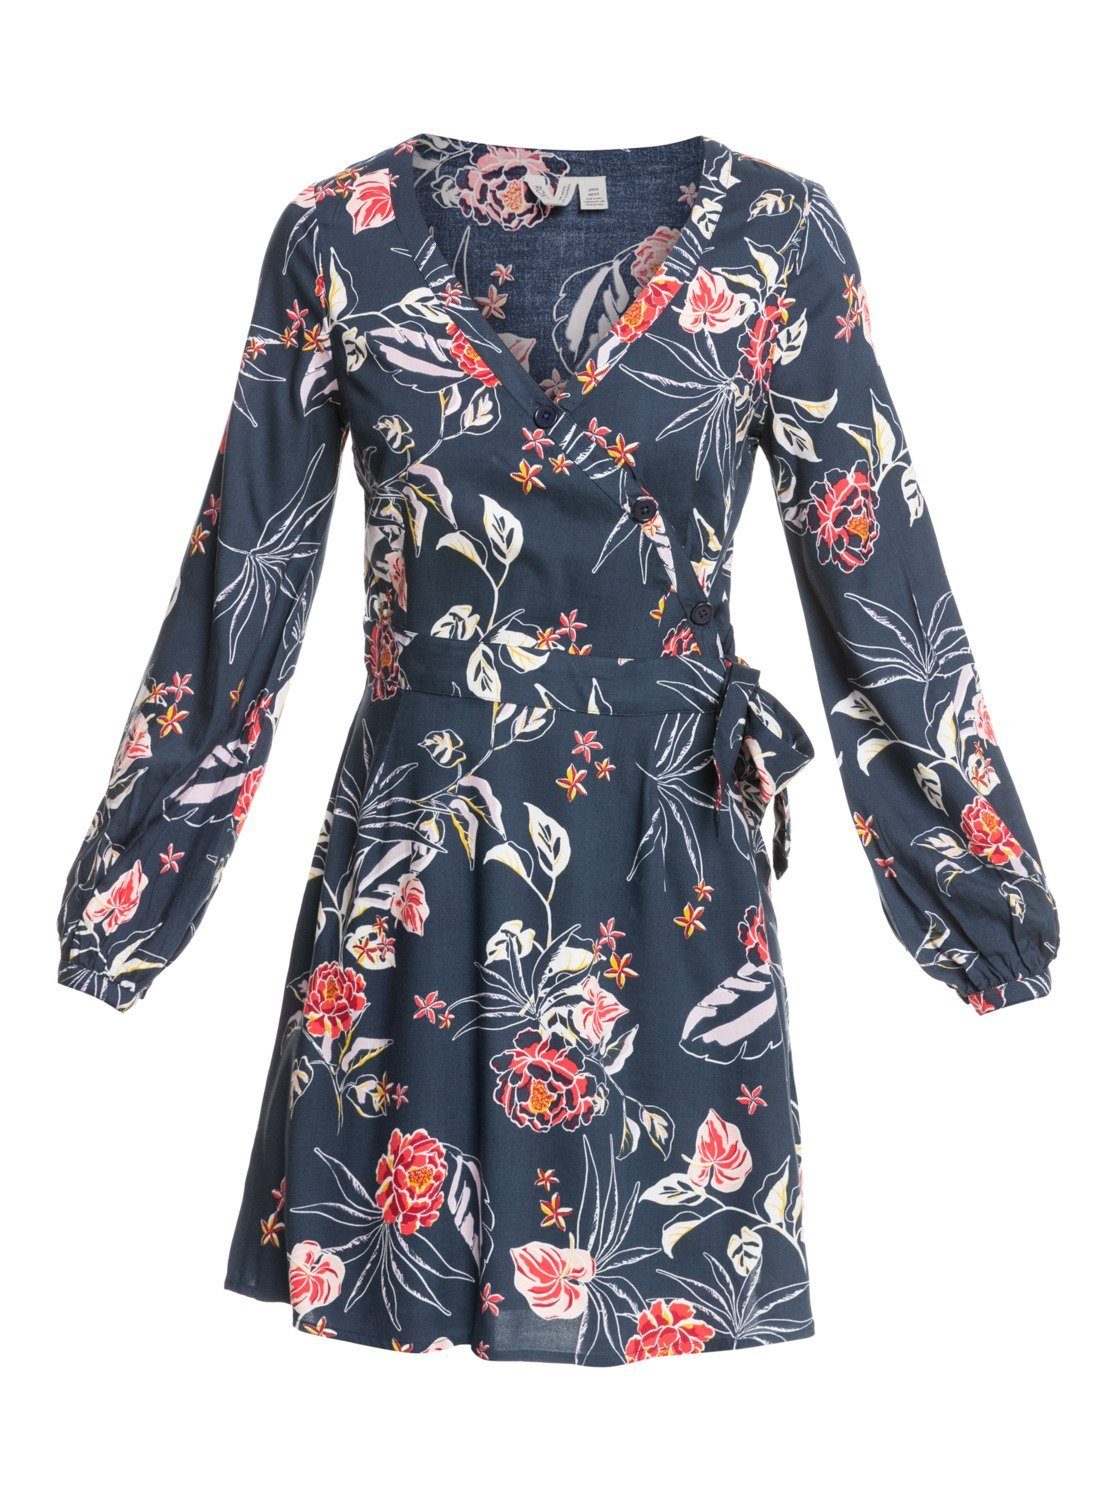 Roxy Sommerkleid »Simply Stated« online kaufen | OTTO